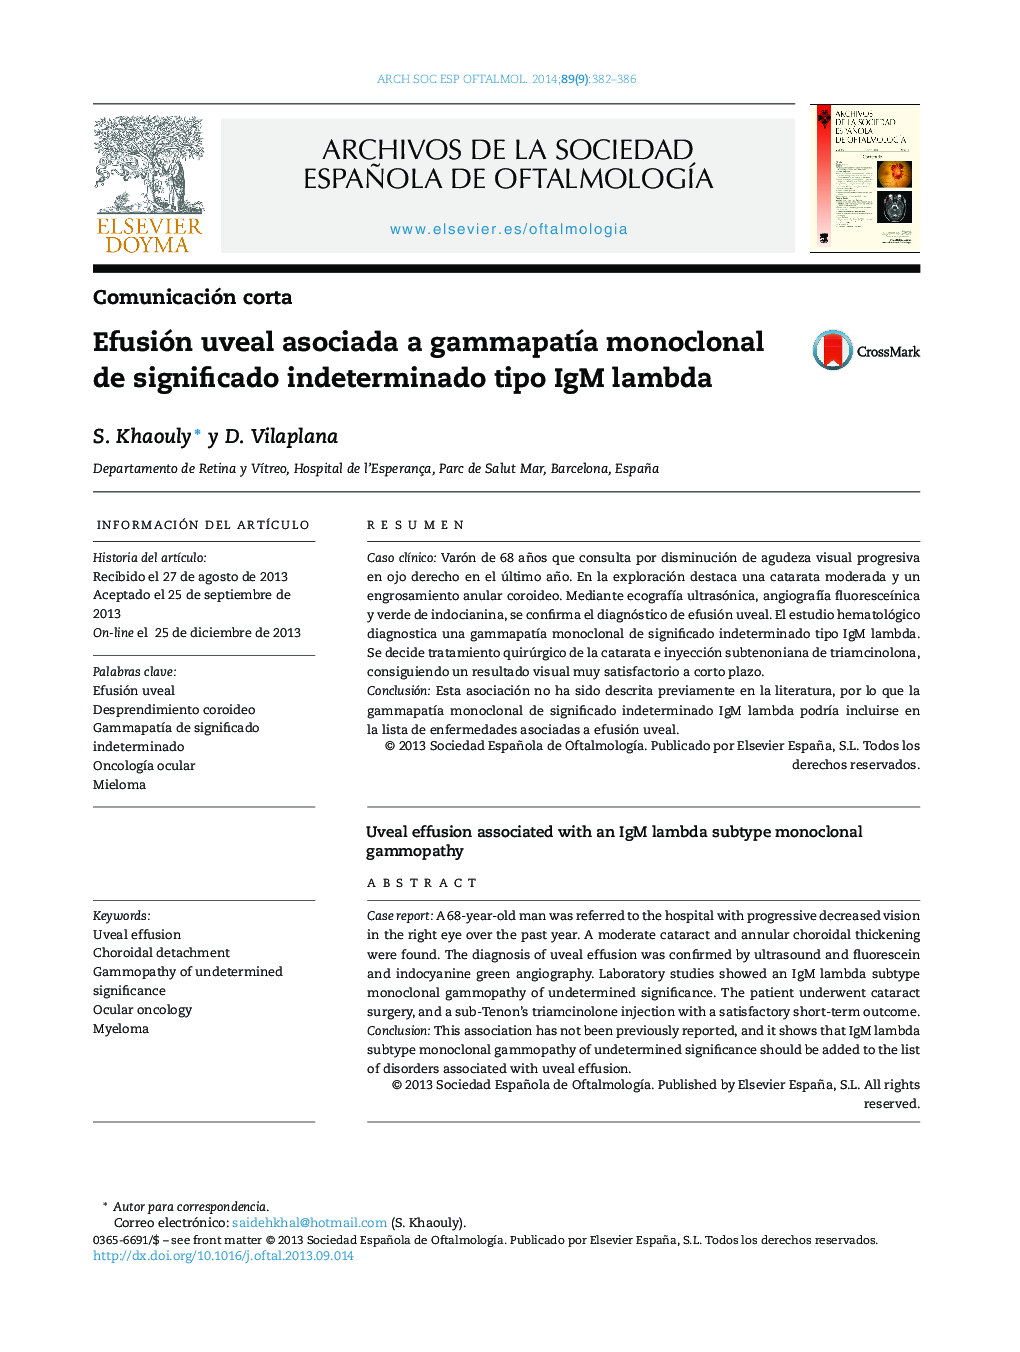 Efusión uveal asociada a gammapatía monoclonal de significado indeterminado tipo IgM lambda